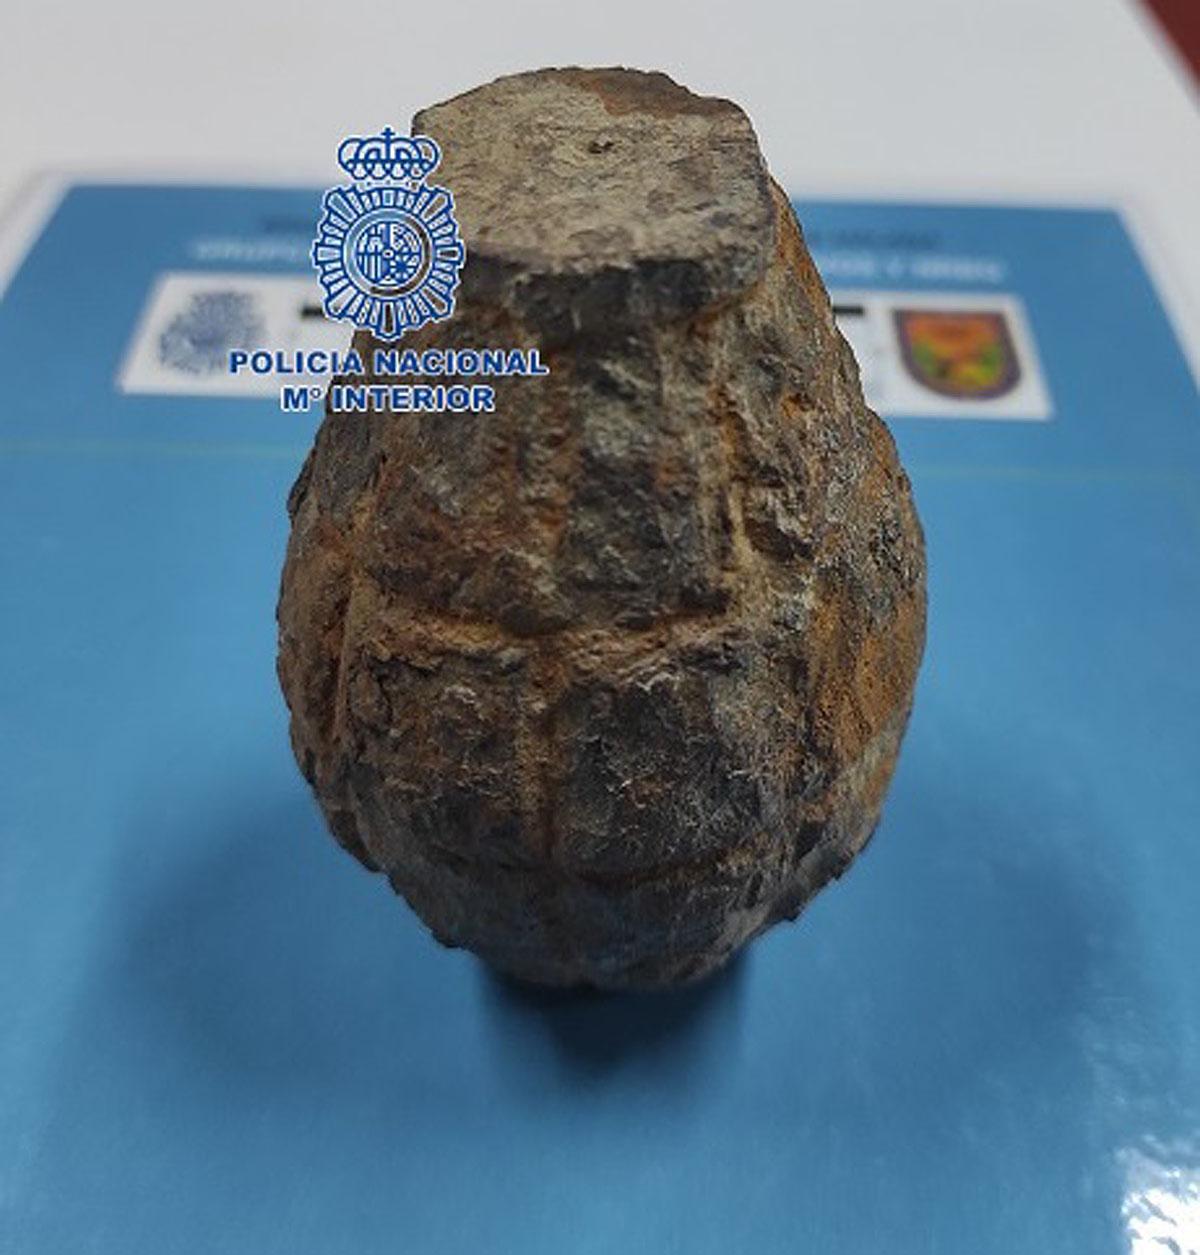 La granada de mano encontrada en Almayate.